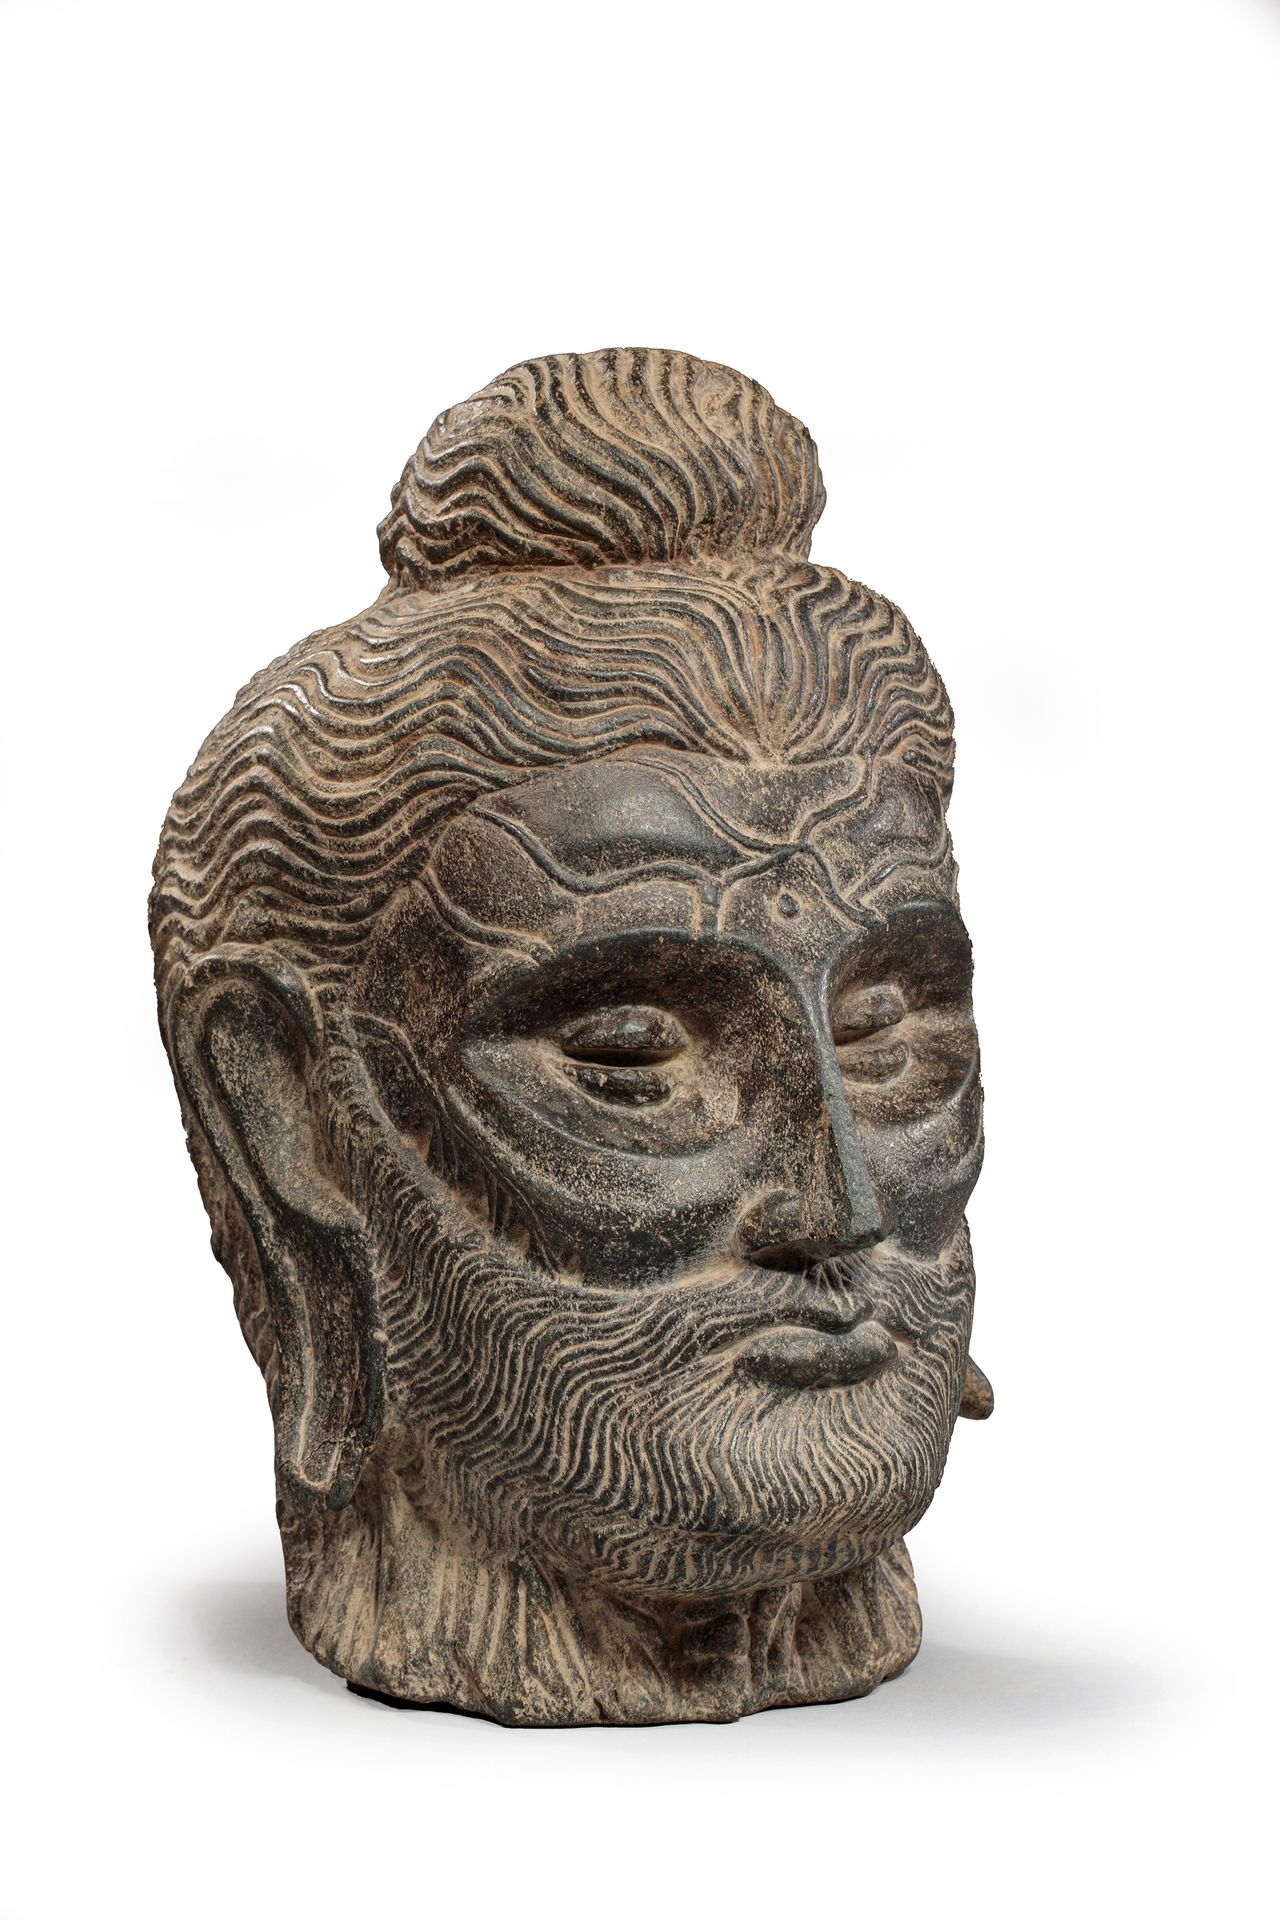 Null 
Ein ausgemergelter Buddha-Kopf aus Schiefer mit einer Frisur aus kleinen L&hellip;